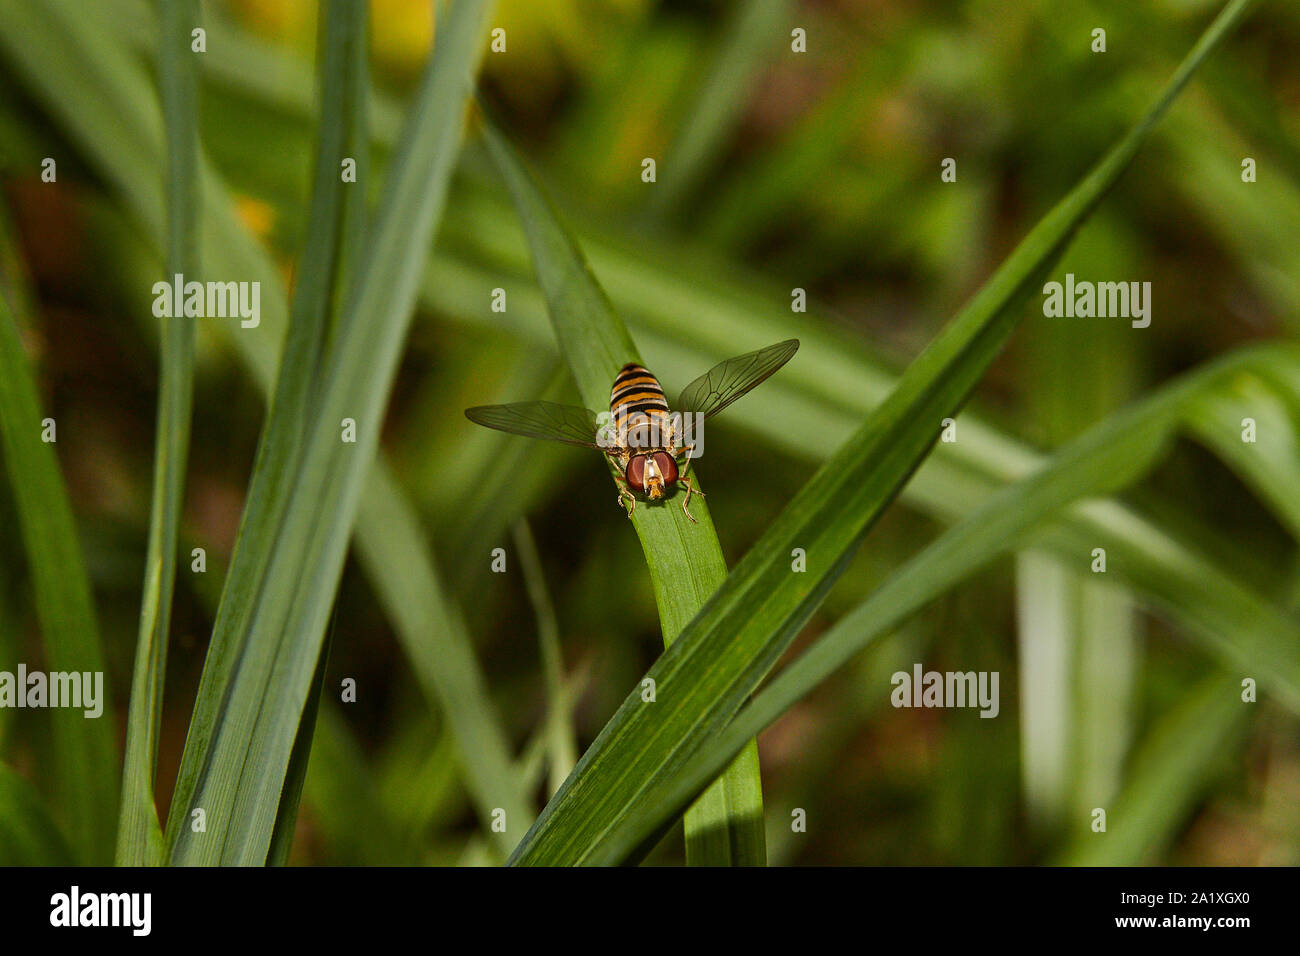 Ein Makro Abbild eines einzigen Hoverfly (Syrphidae) saß auf einem grünen Blatt Stockfoto